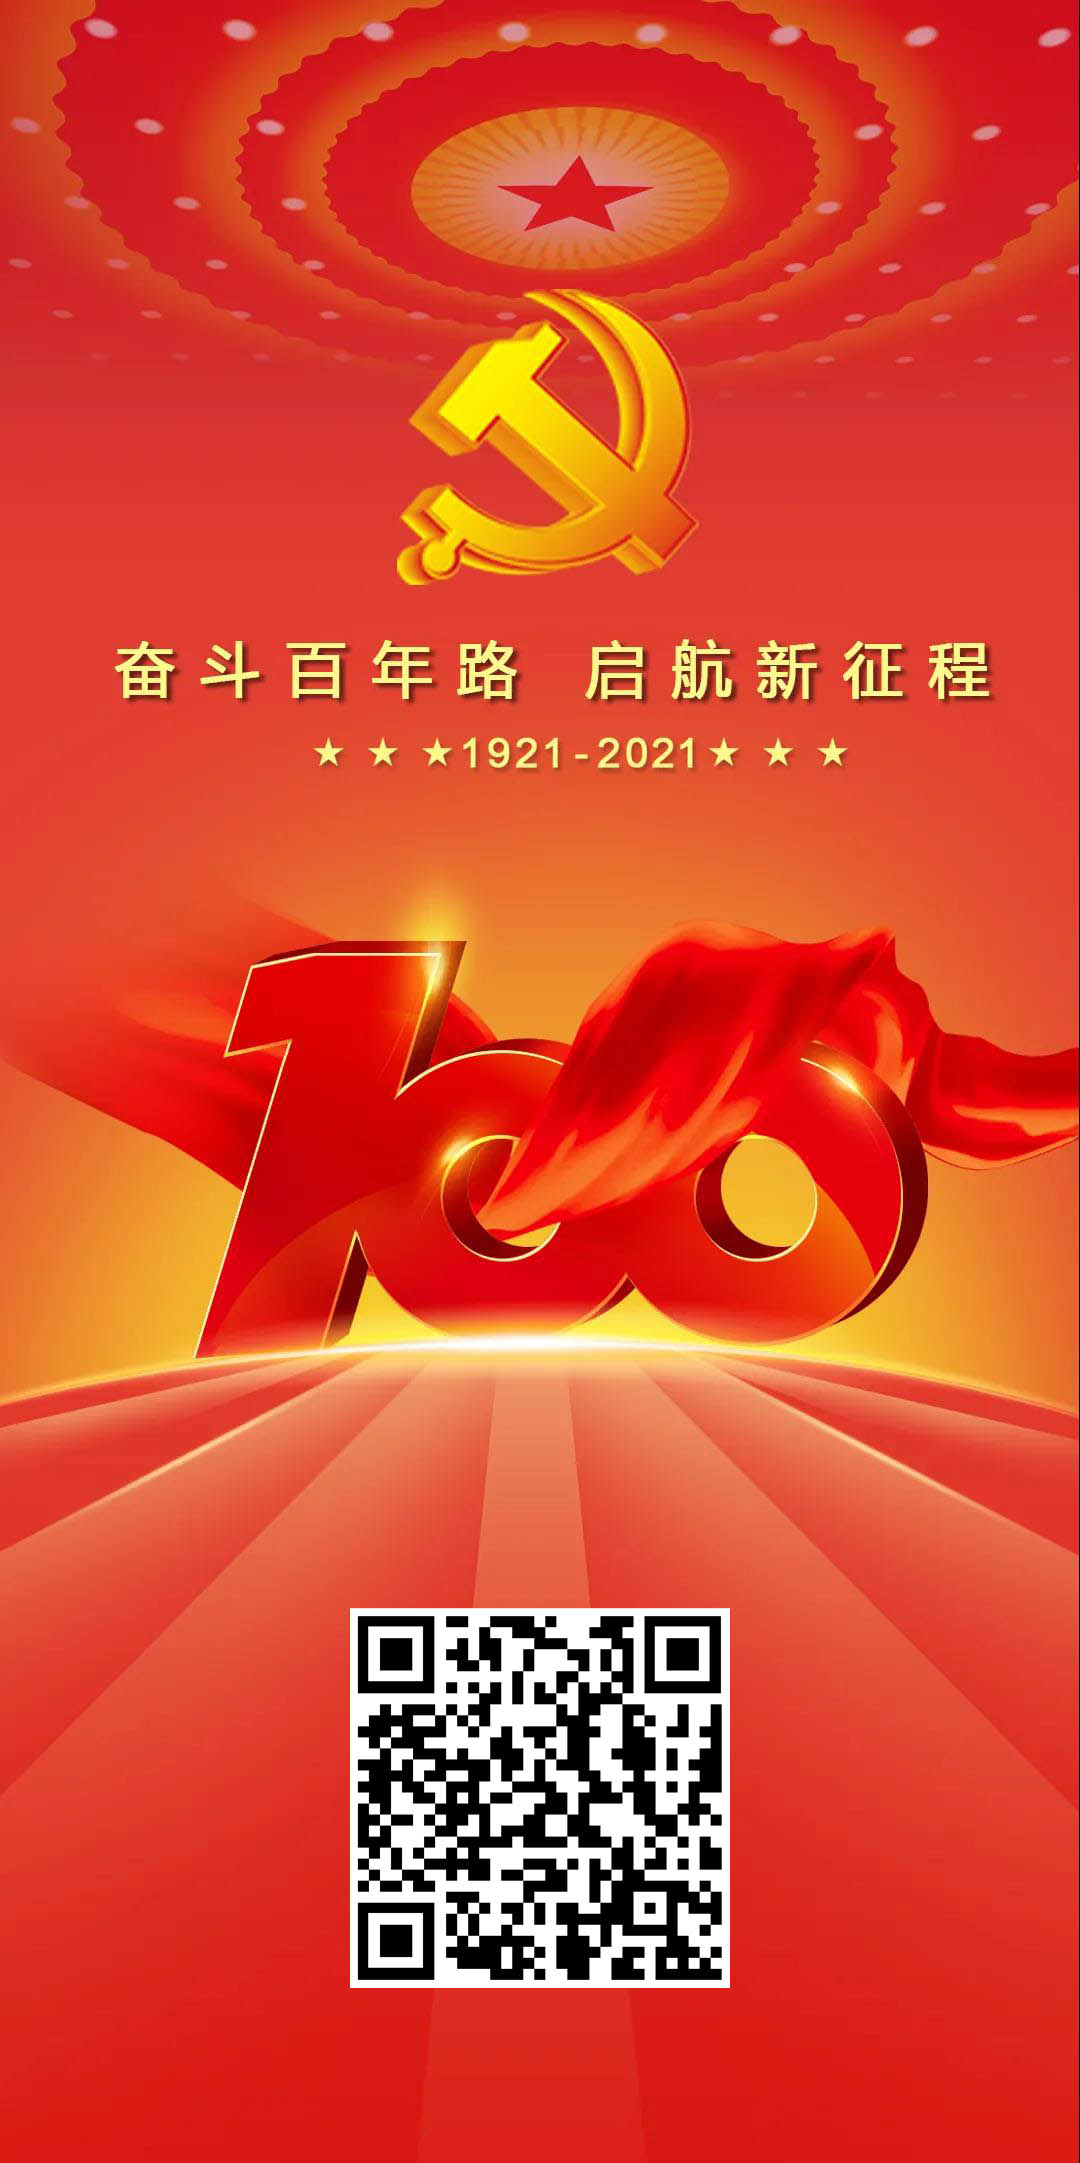 戈埃尔科技热烈庆祝中国共产党成立100周年